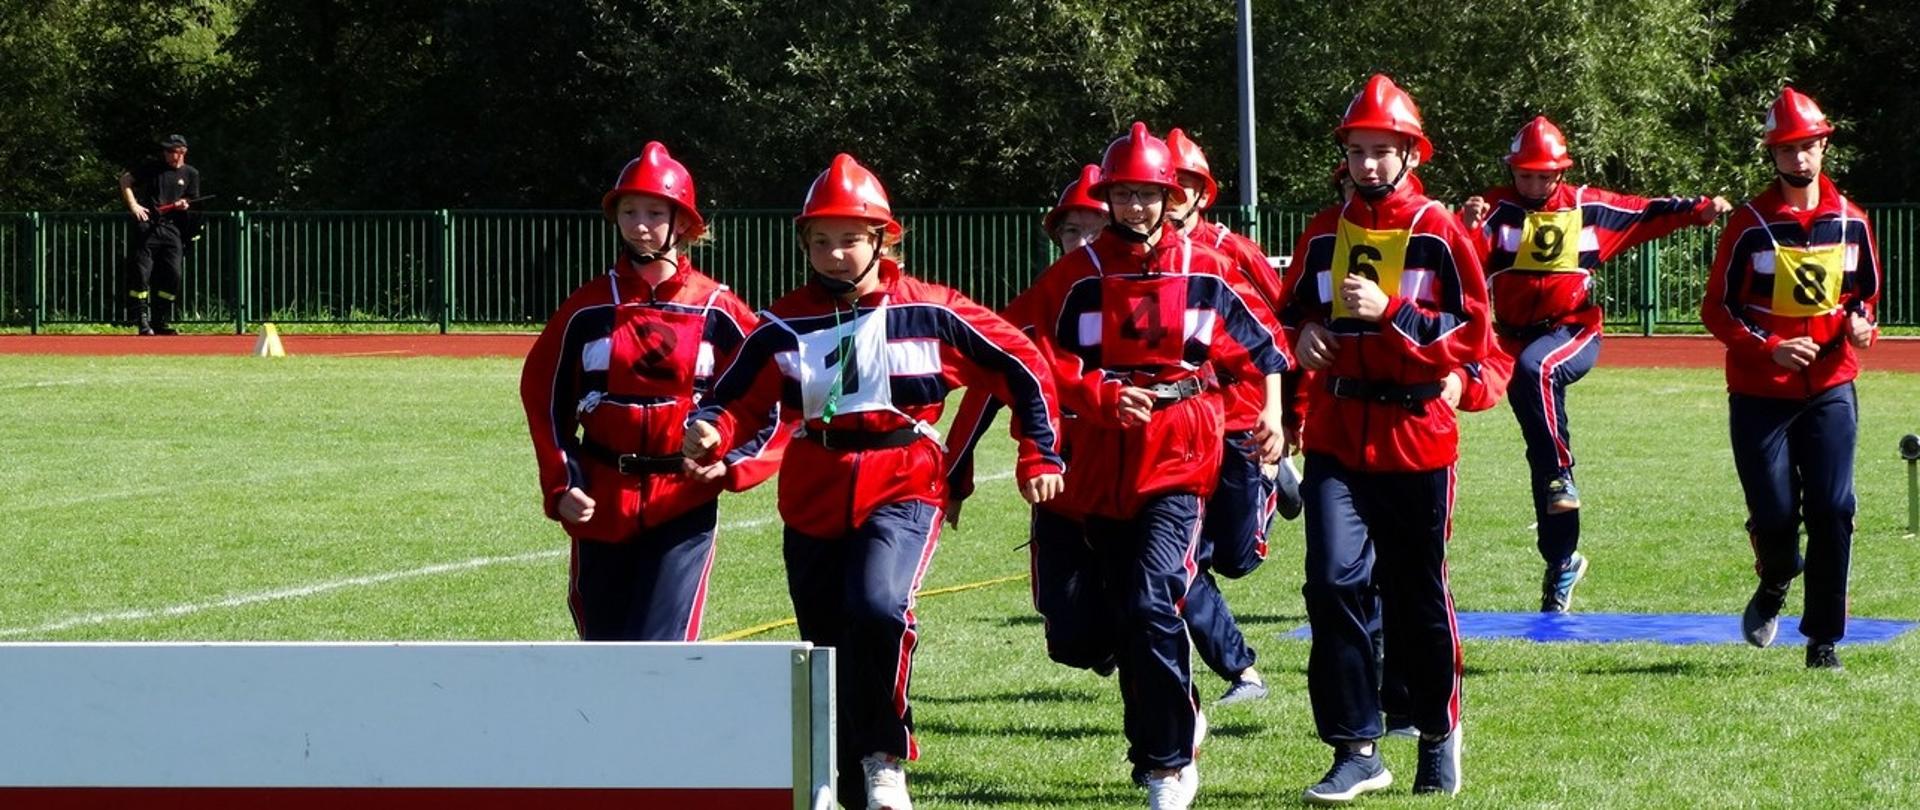 Na zdjęciu drużyna dziewcząt ubrana w czerwono-granatowe dresy biegnie w stronę przeszkody